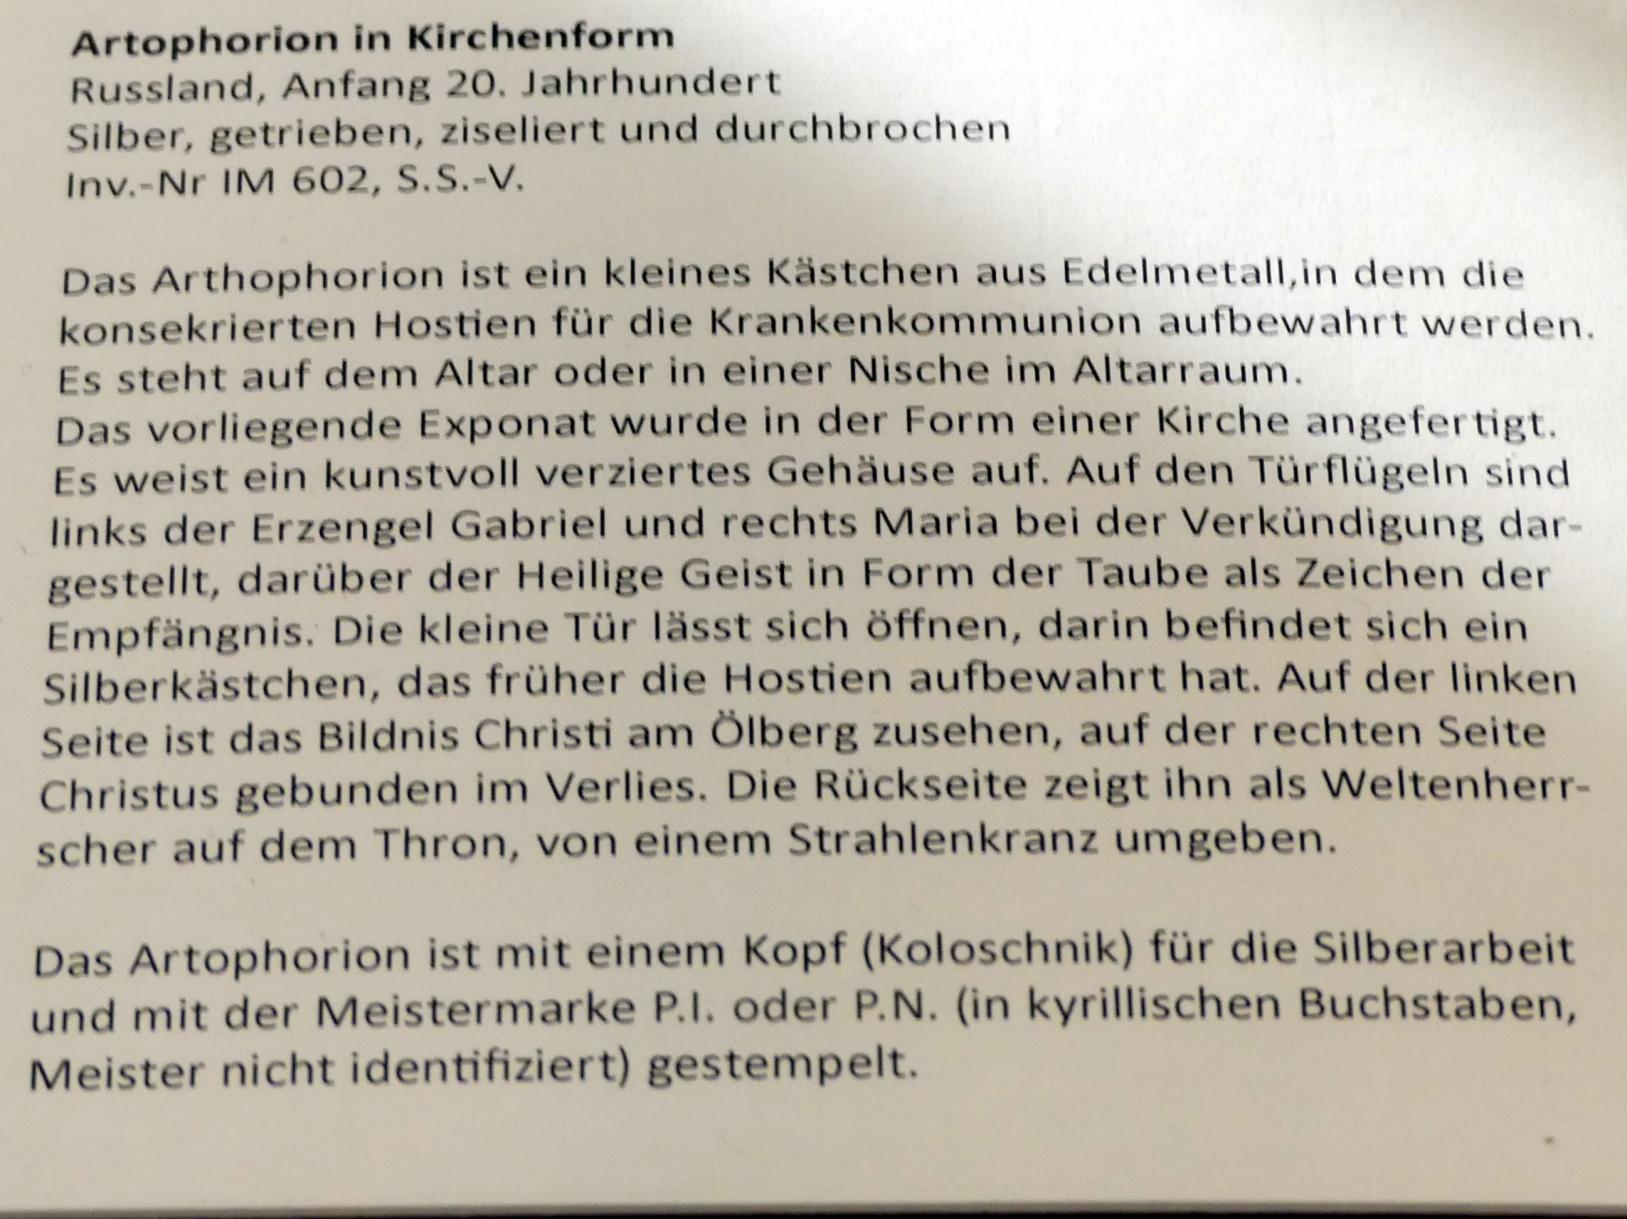 Artophorion in Kirchenform, Frankfurt am Main, Ikonen-Museum, Erdgeschoss, Beginn 20. Jhd., Bild 2/2